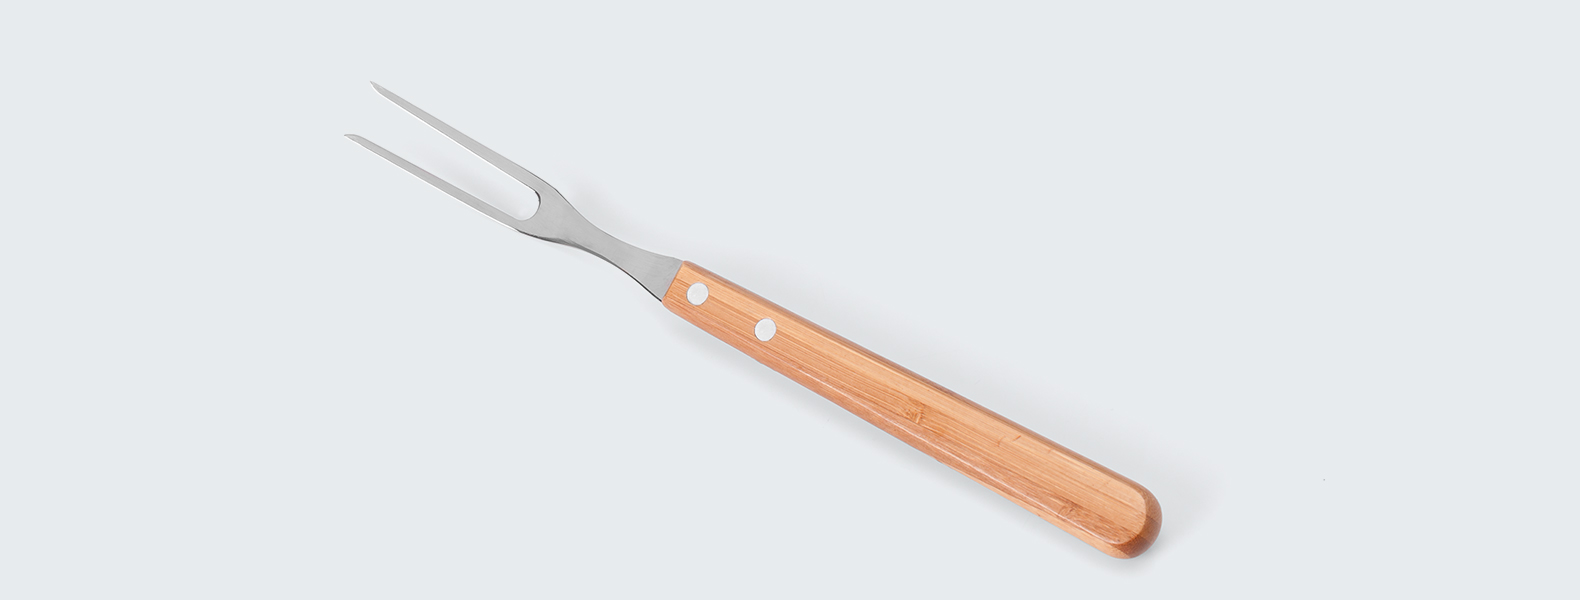 Conjunto de Faca em Bambu/Aço Inox. Acompanha faca 7'', garfo em Bambu/Inox e caixa para presente. Como cortesia, fazemos uma gravação na lâmina da faca com os cortes do boi.